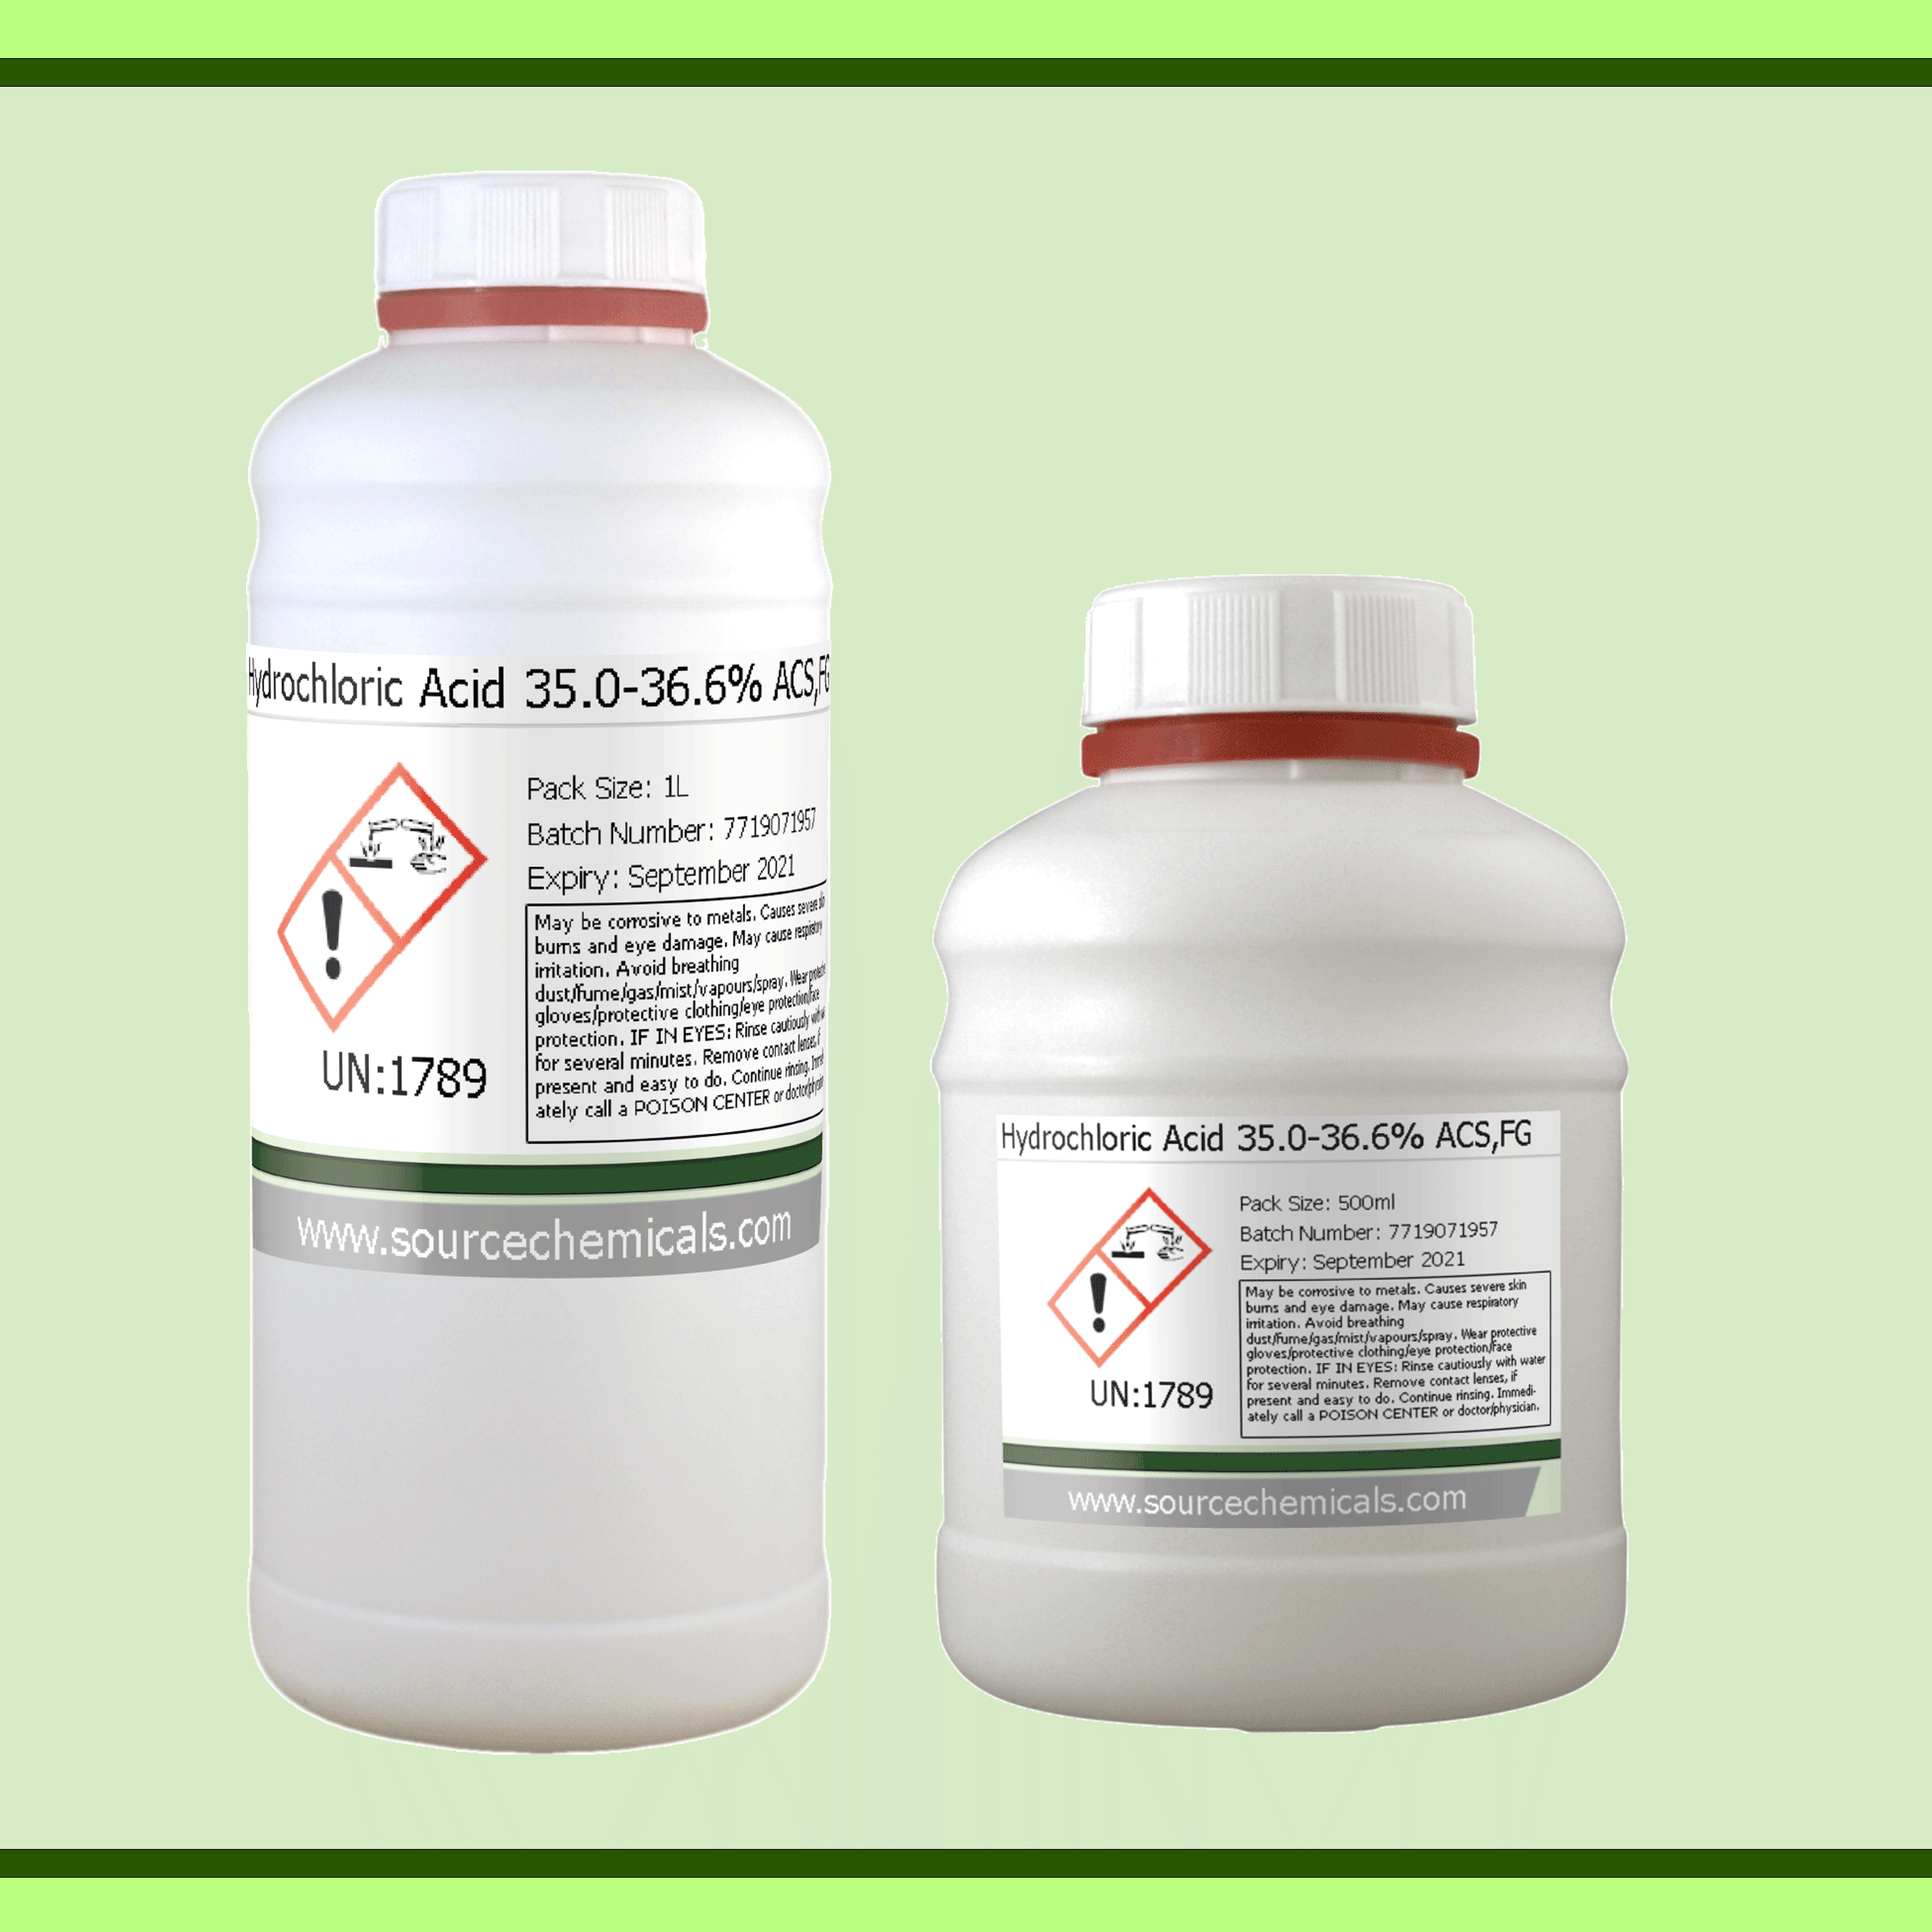 Hydrochloric Acid 35.0-36.6% ACS,FG